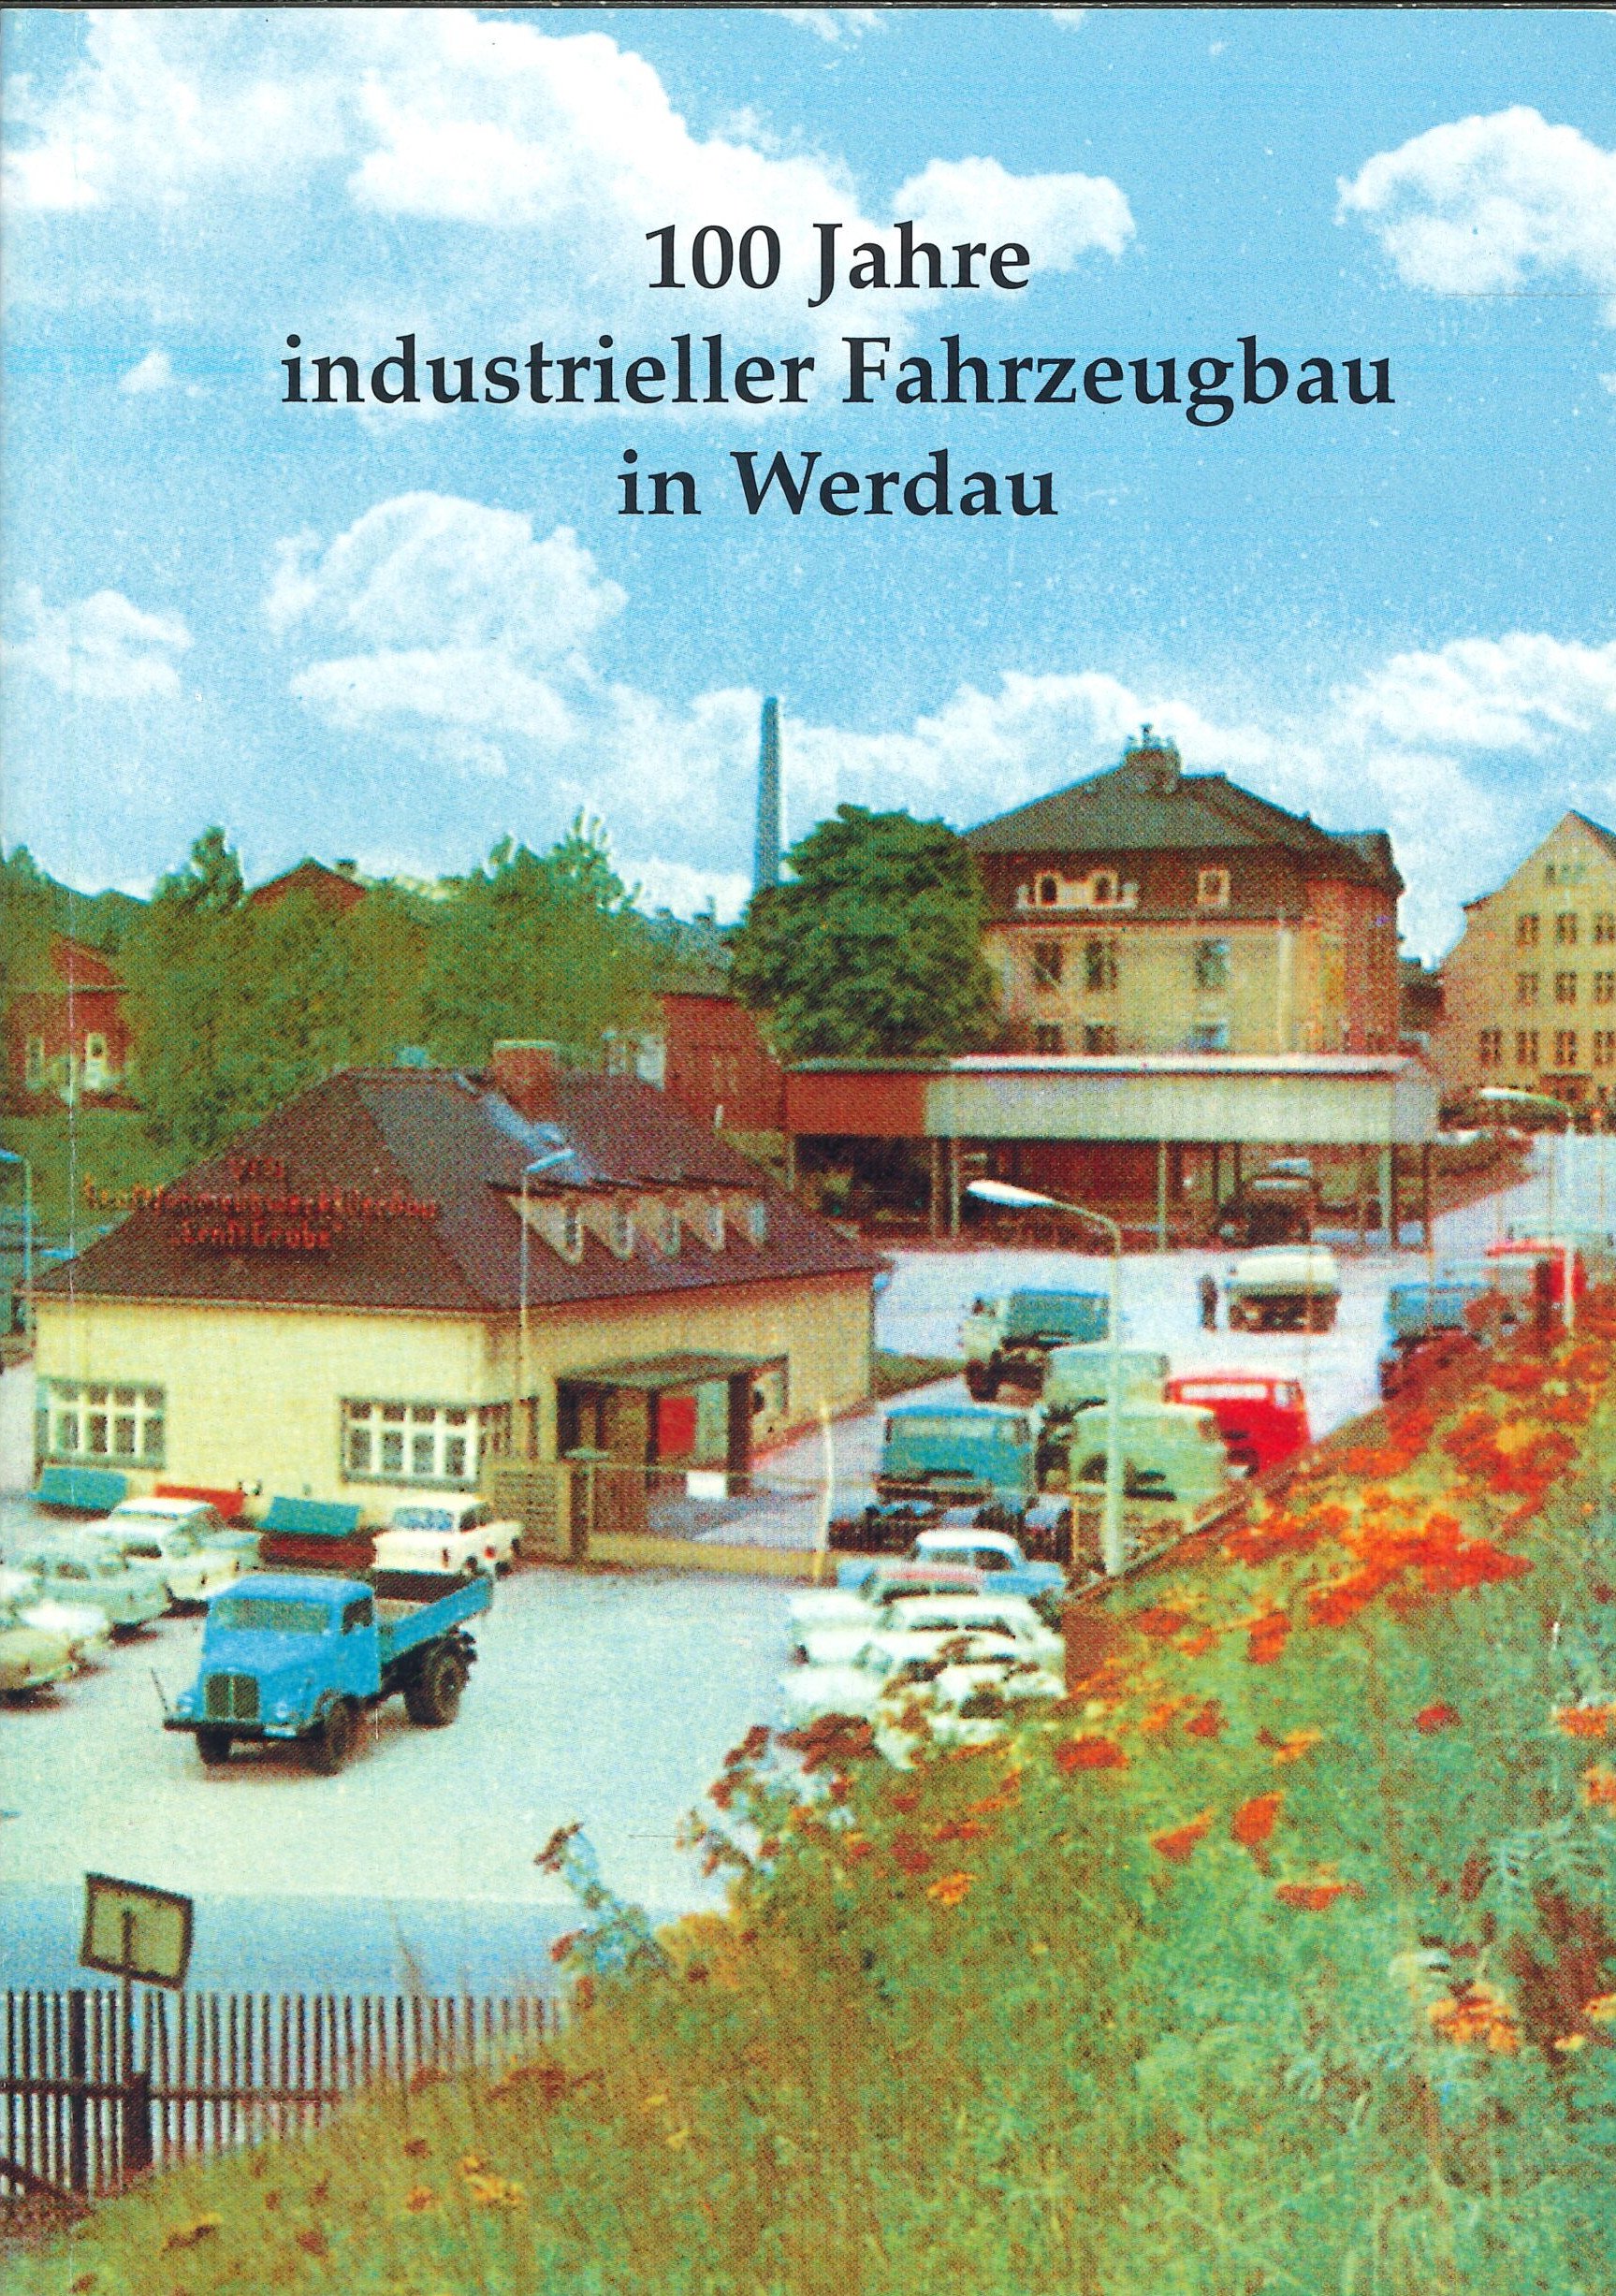 Festschrift Werdau (Feuerwehrmuseum Grethen CC BY-NC-SA)